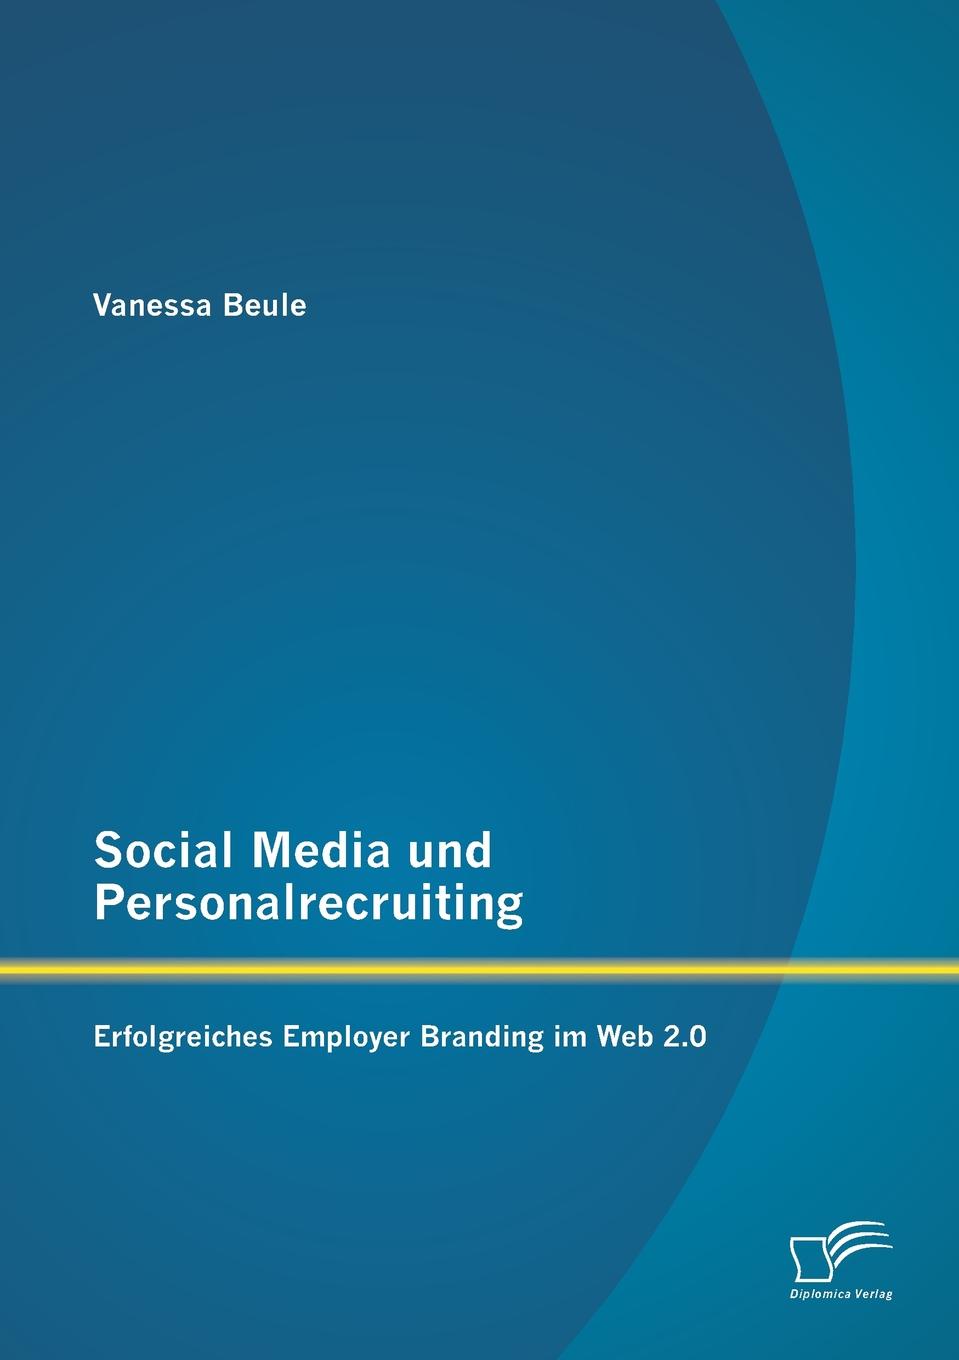 Social Media und Personalrecruiting. Erfolgreiches Employer Branding im Web 2.0